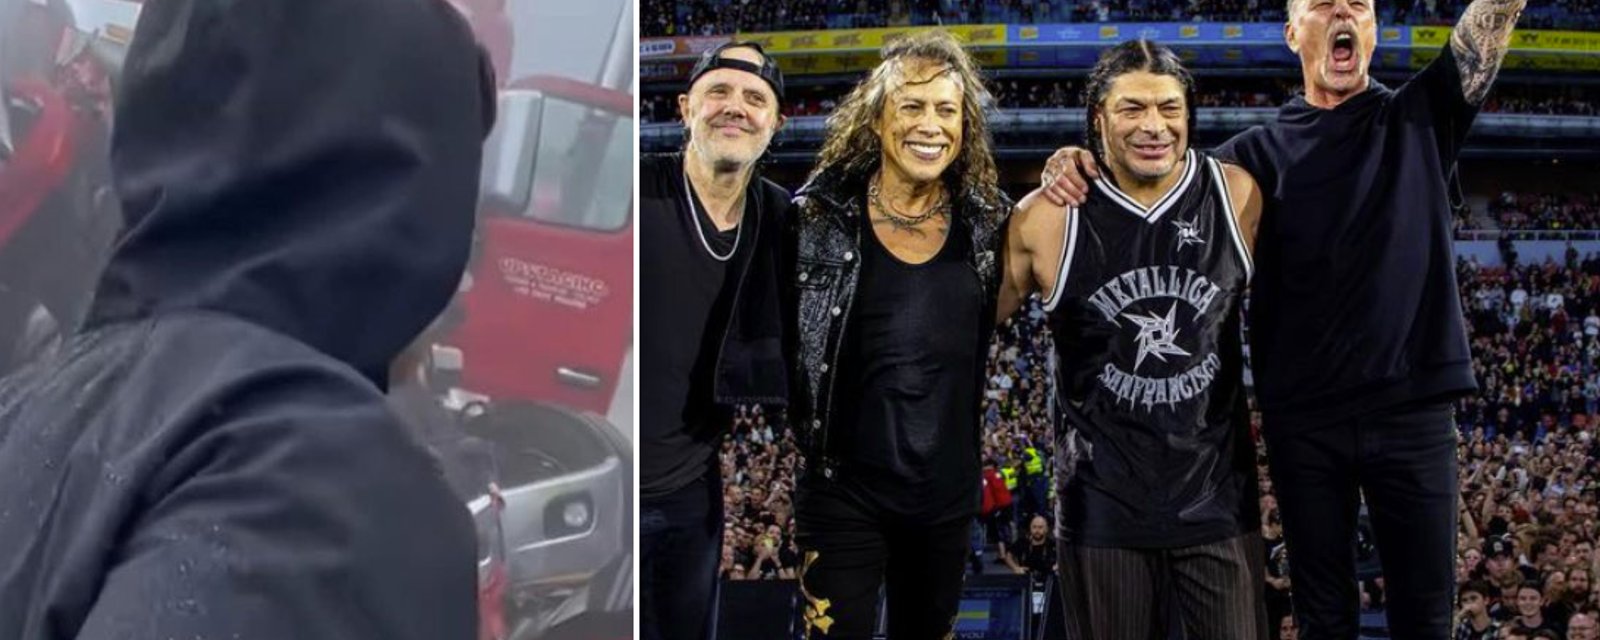 Un camion de l'équipe de Metallica impliqué dans un accident majeur